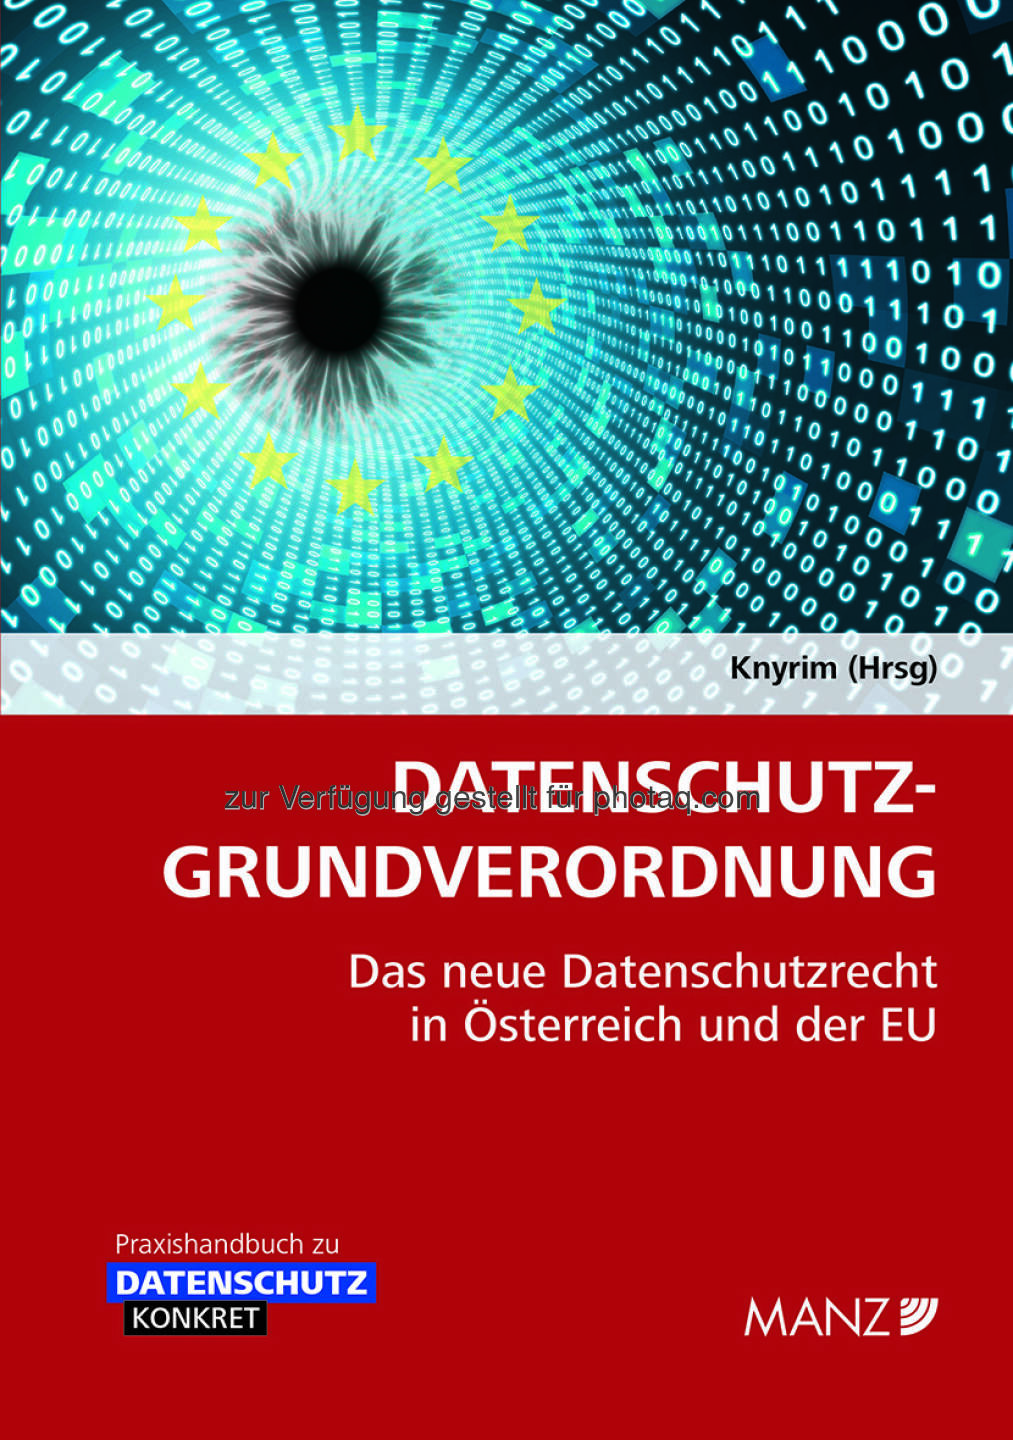 Handbuch Datenschutz-Grundverordnung : Datenschutzrechtsexperte Rainer Knyrim ist Herausgeber dieses Praxishandbuches : Fotocredit: Manz'sche Verlags- und Universitätsbuchhandlung GmbH